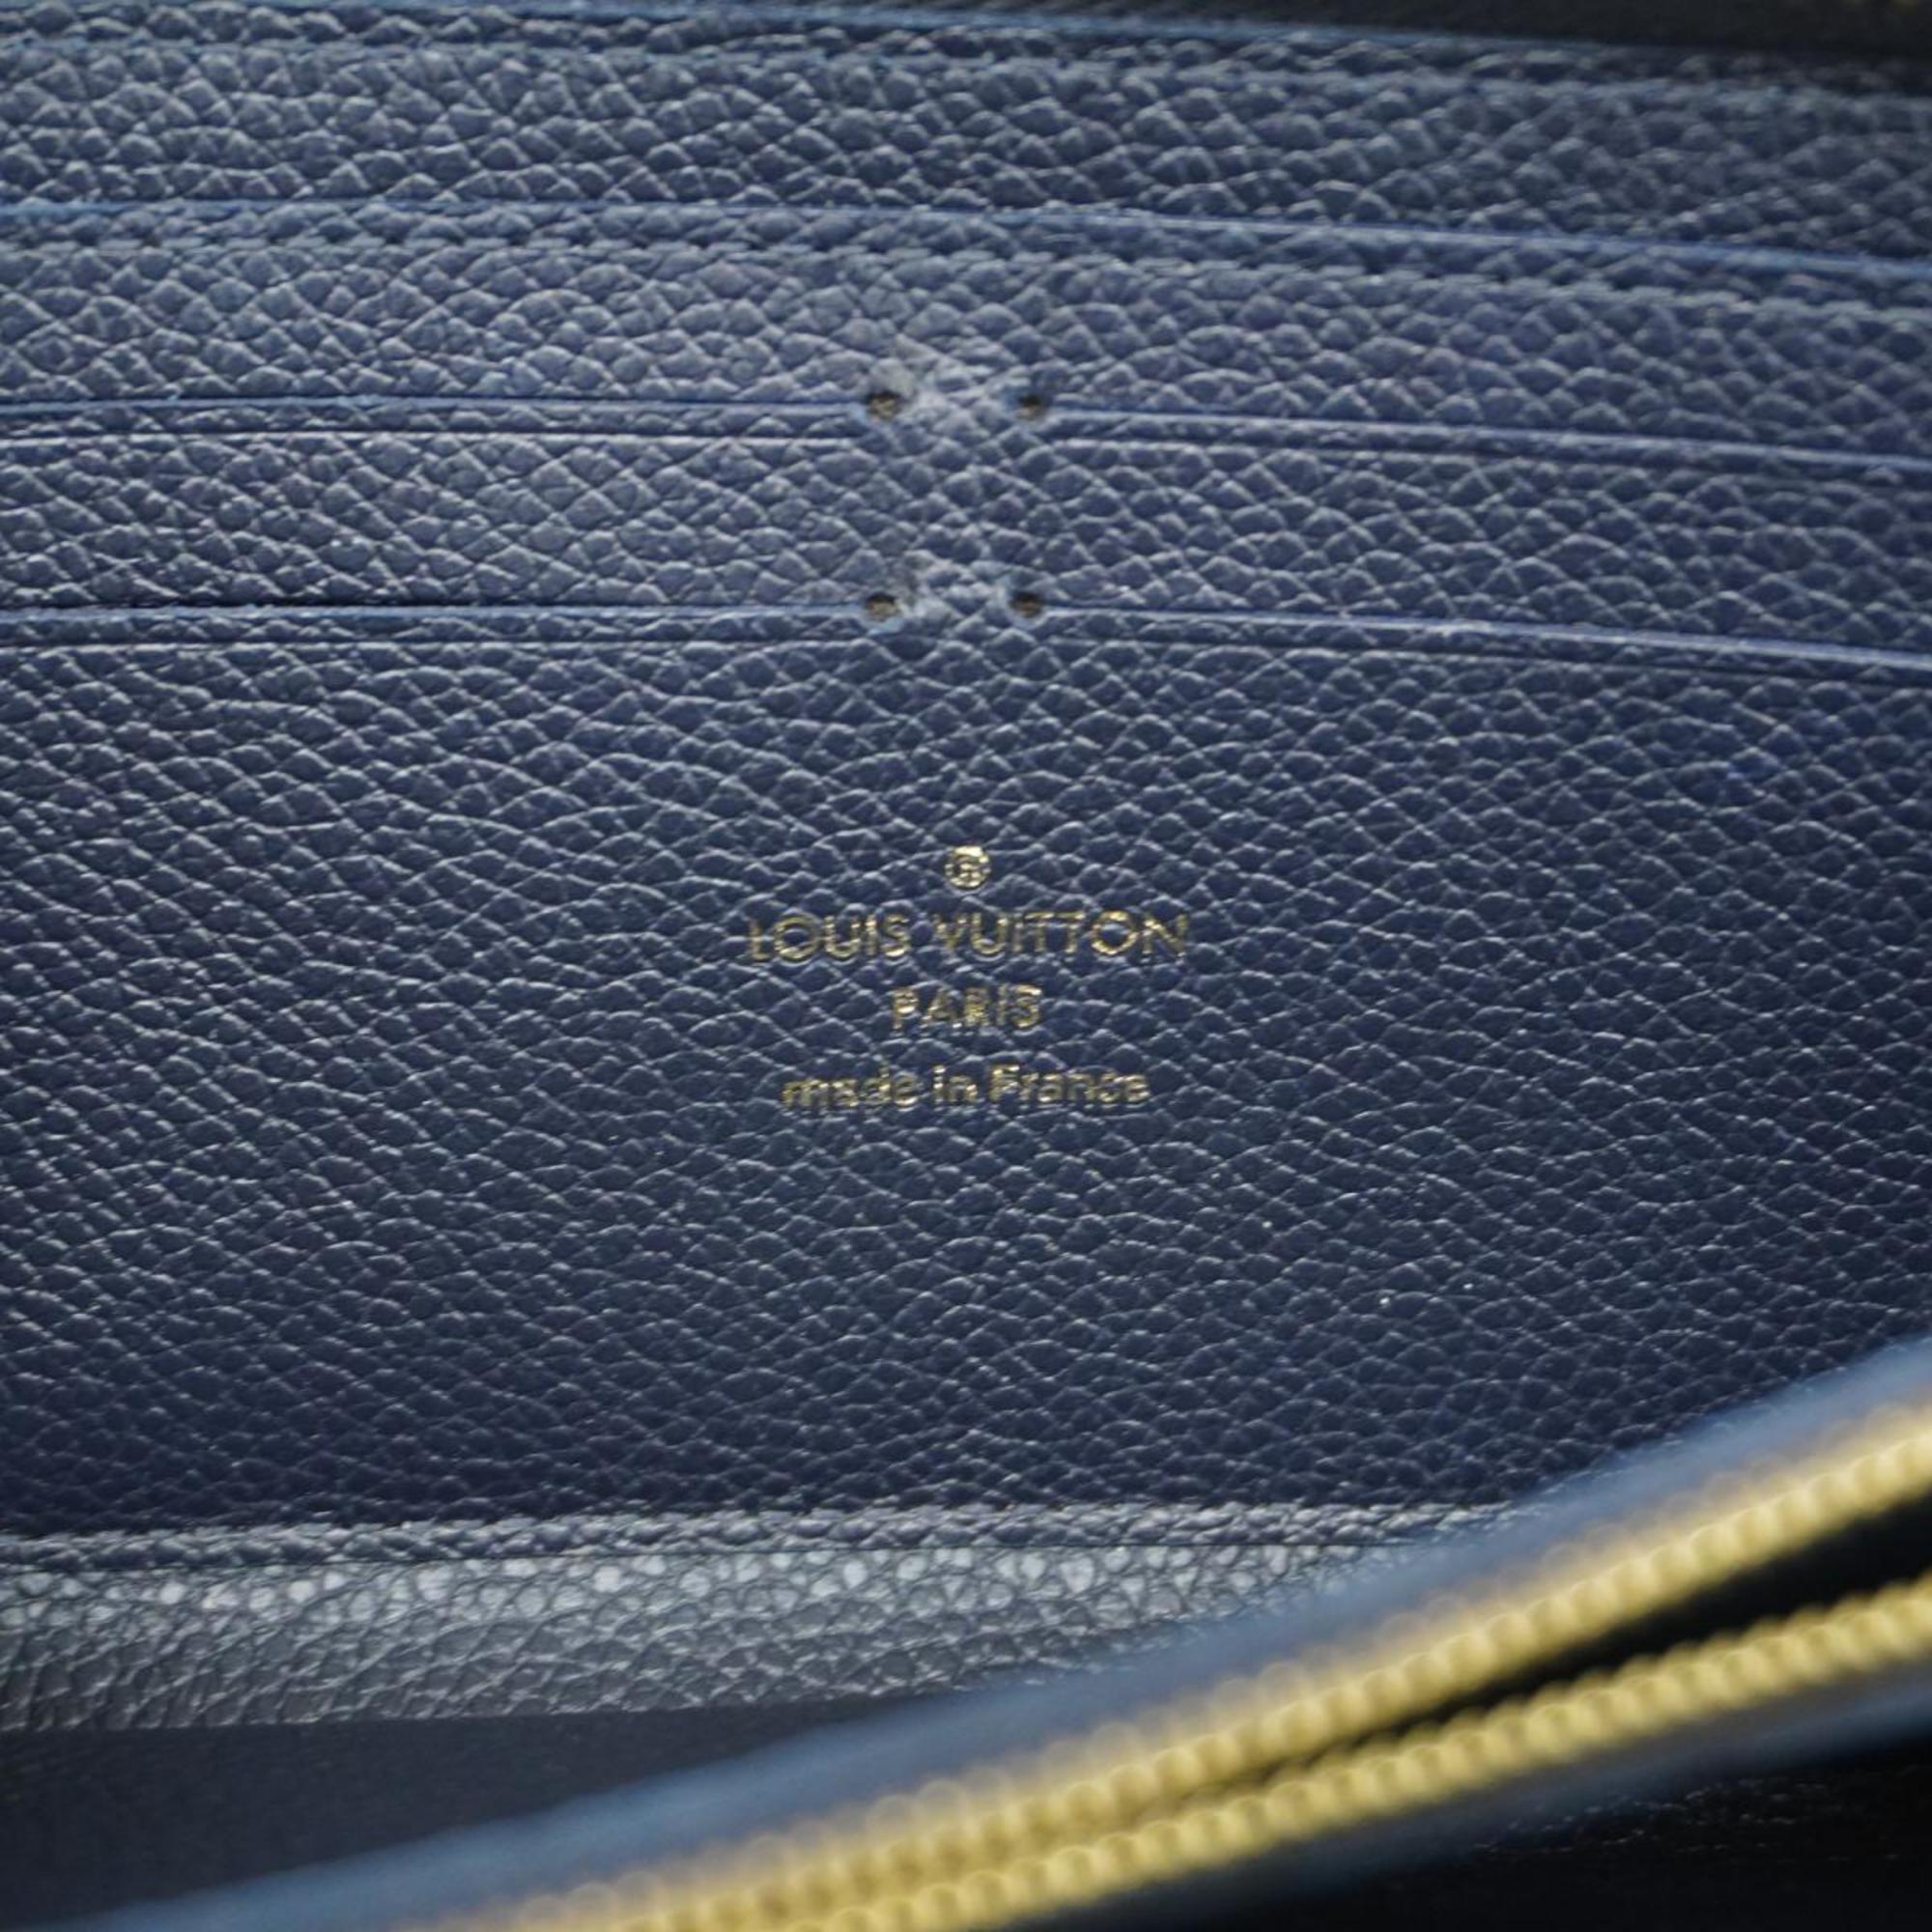 Louis Vuitton Long Wallet Monogram Empreinte Portefeuille Clemence M69415 Marine Rouge Men's Women's